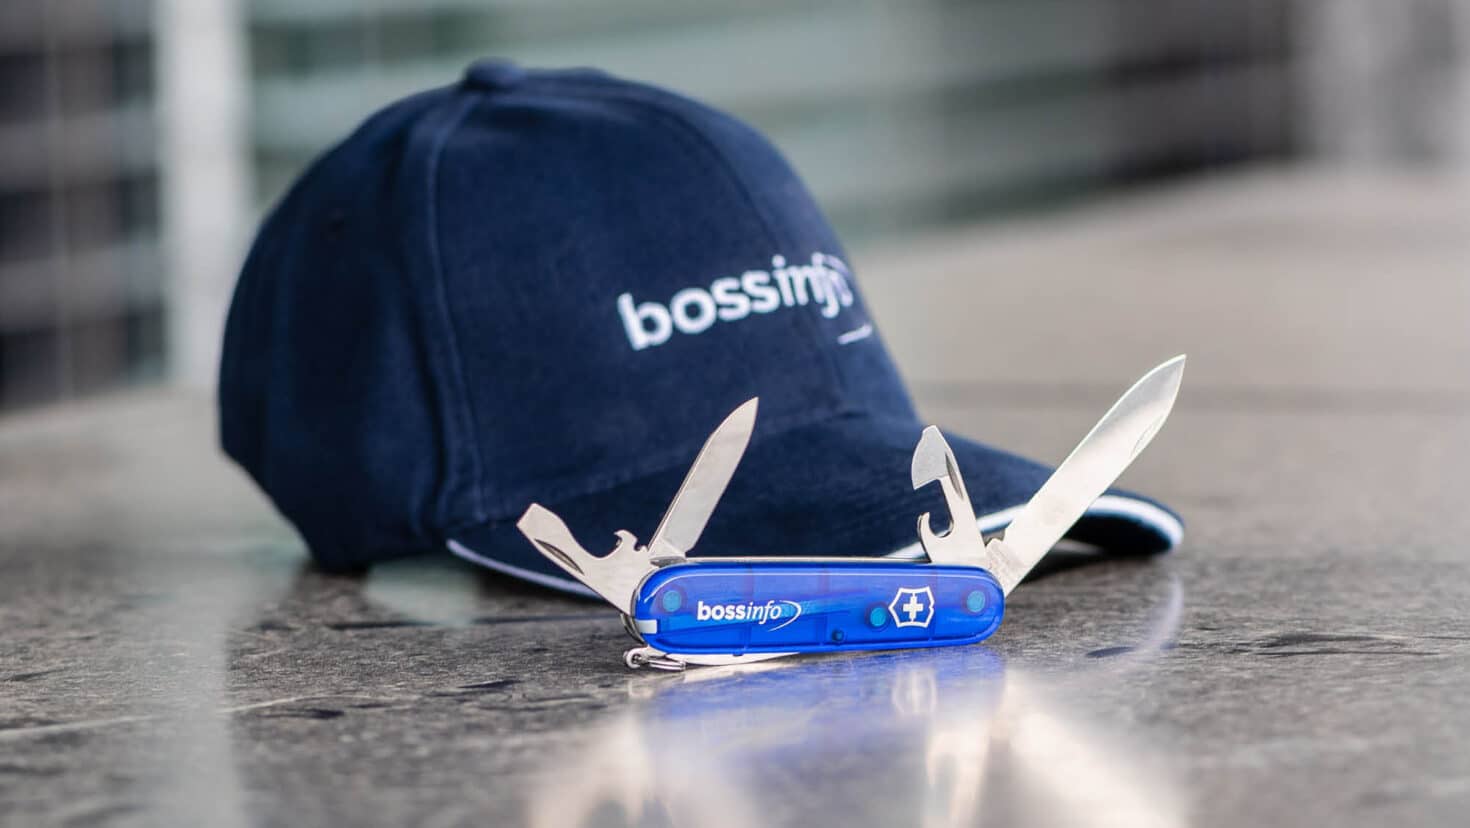 Cooles Cap und Taschenmesser mit Boss Info Logo